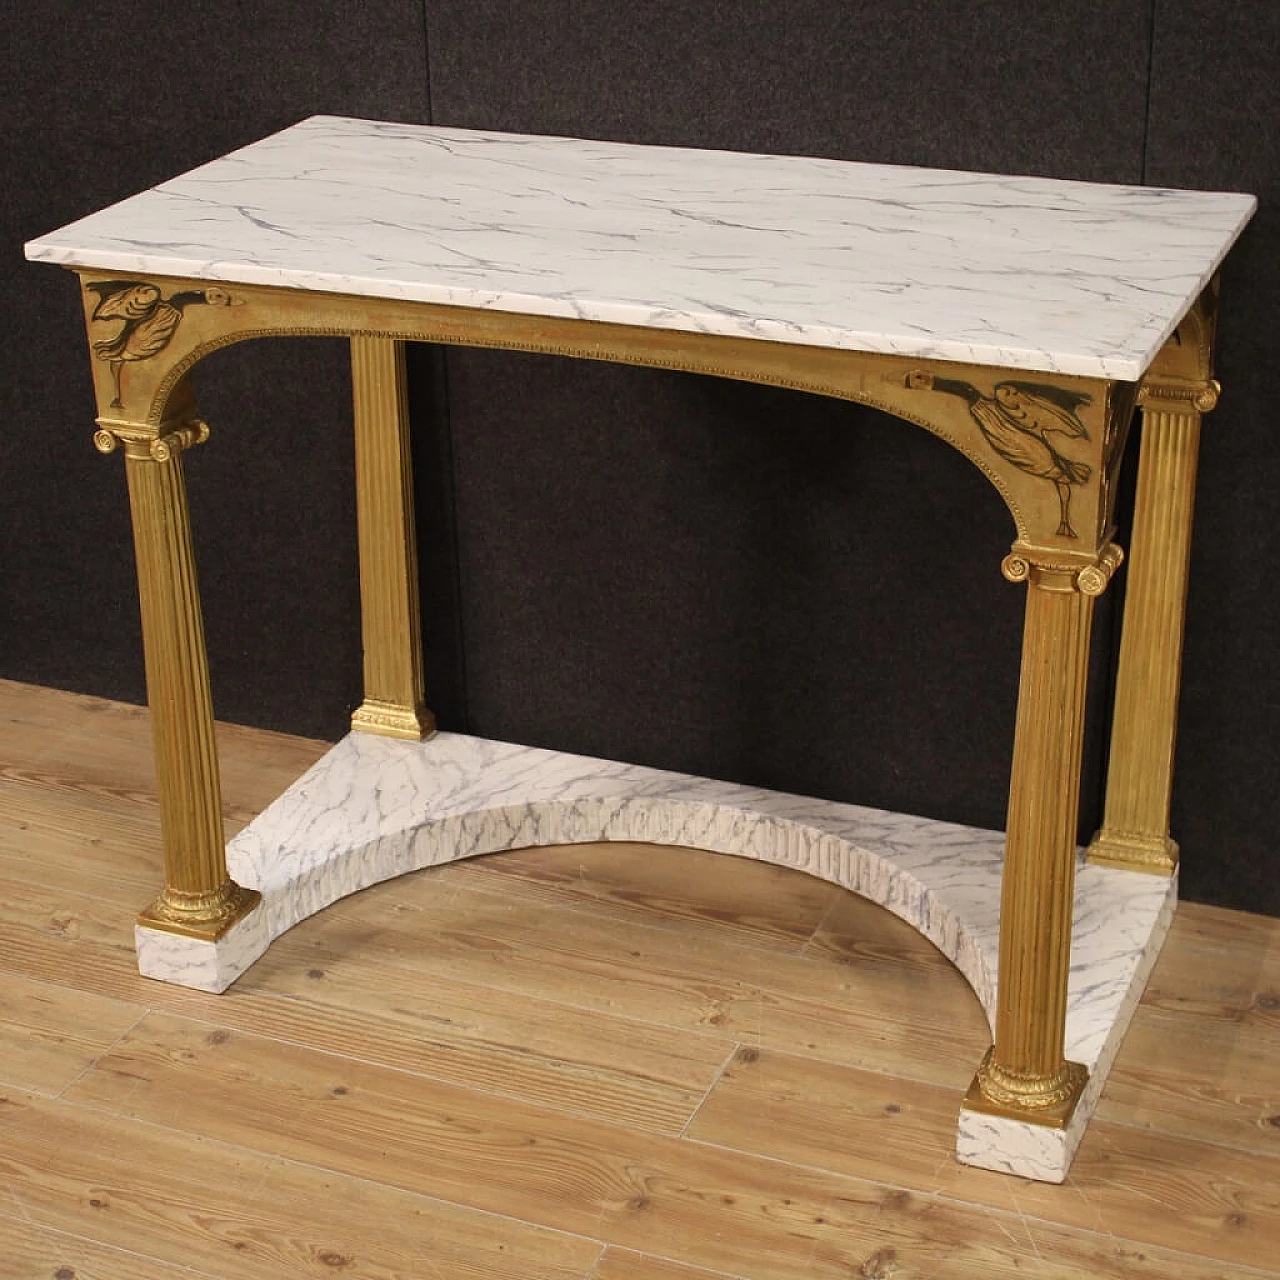 Grande console laccata e dorata con piano finto marmo 1214198